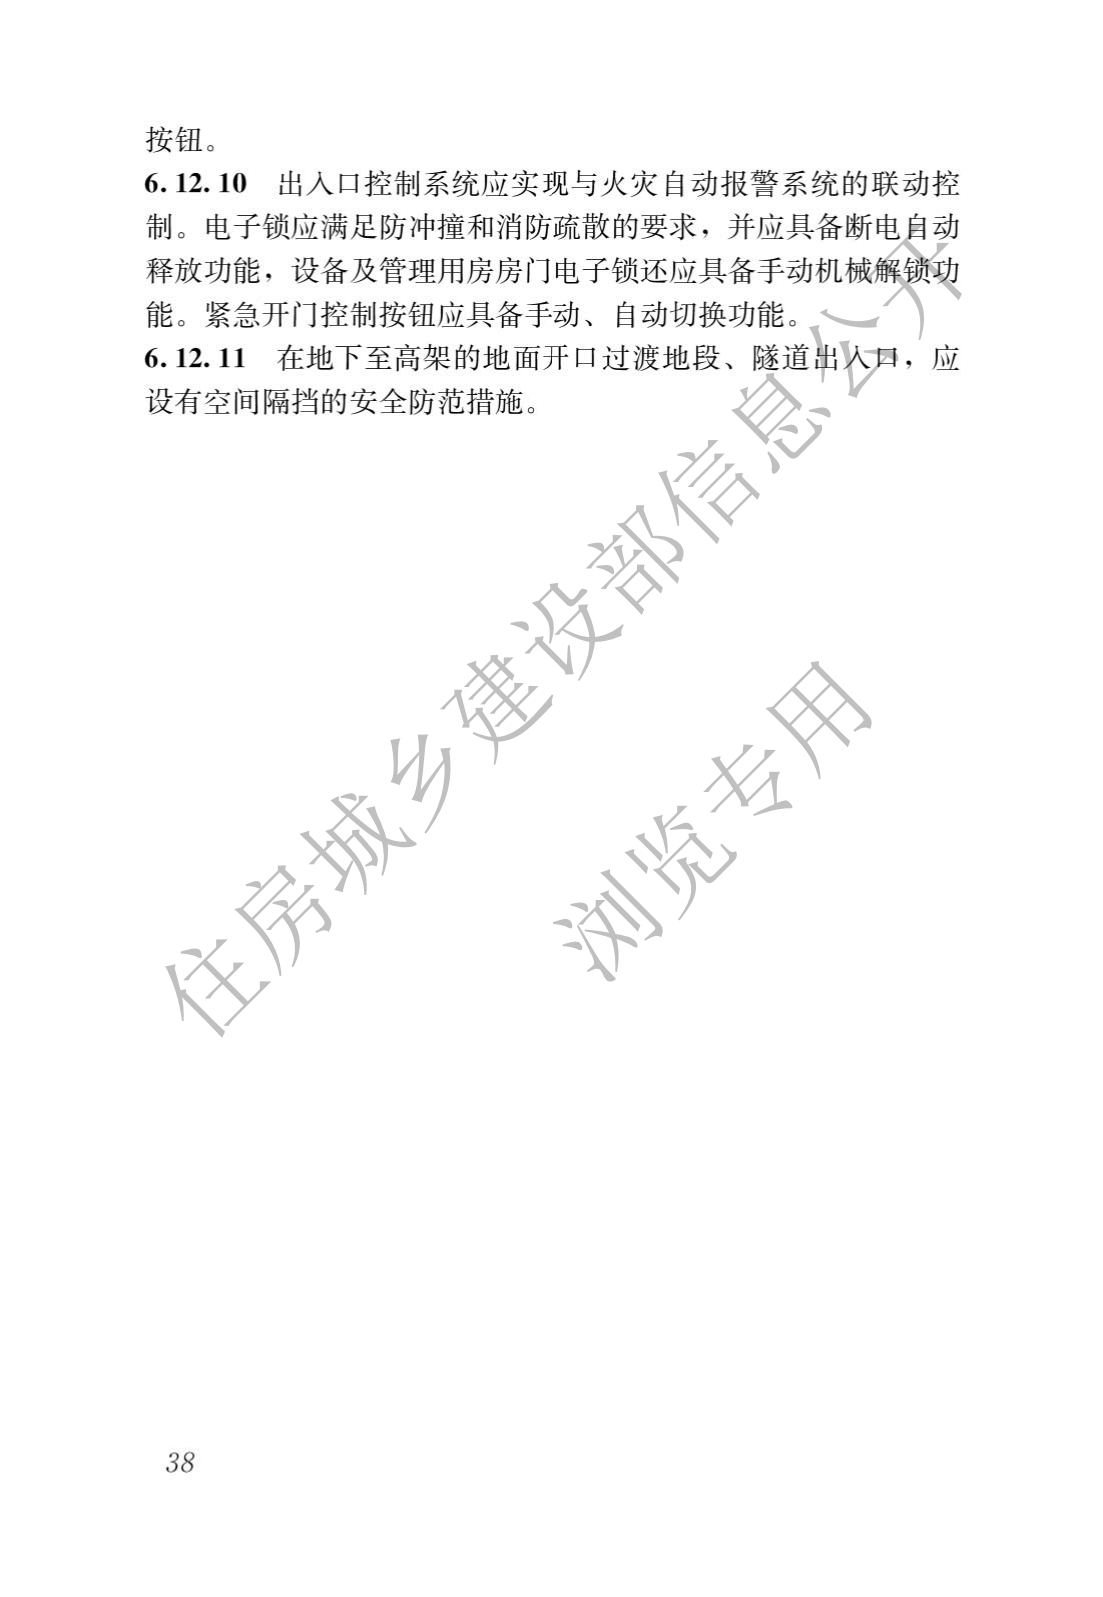 住房和城鄉建設部關于發布國家标準 《城市軌道交通工(gōng)程項目規範》的公告(圖42)